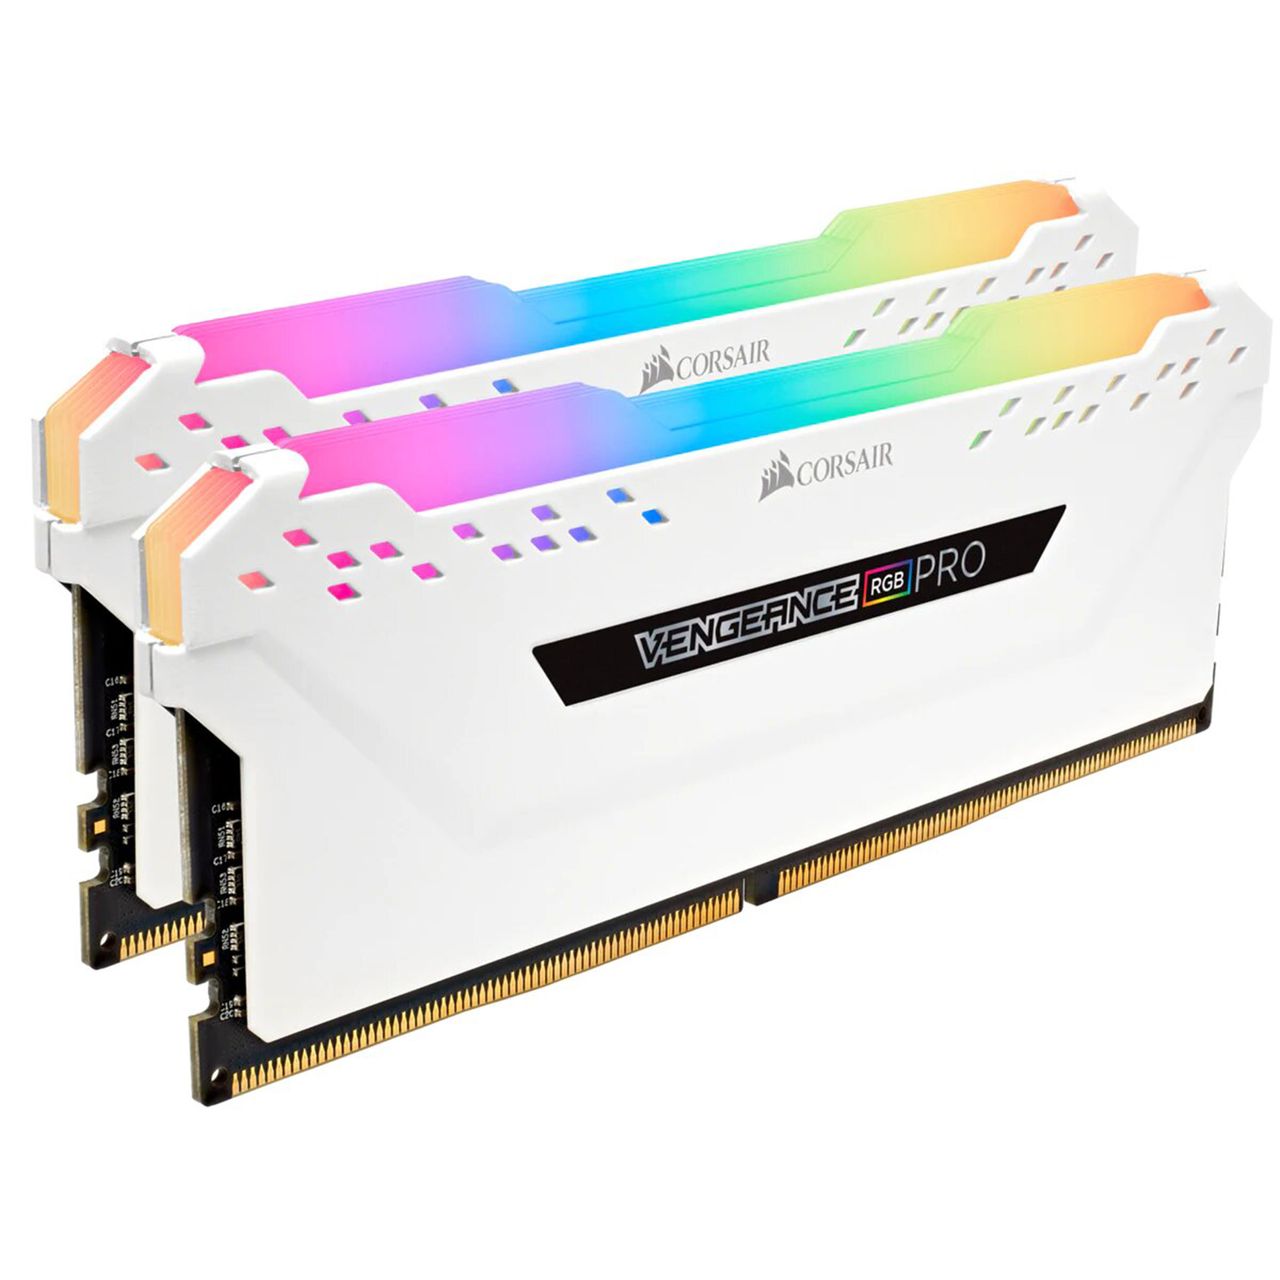 رم دسکتاپ DDR4 دو کاناله 3200 مگاهرتز CL16 کورسیر مدل VENGEANCE RGB RPO  ظرفیت 16گیگابایت